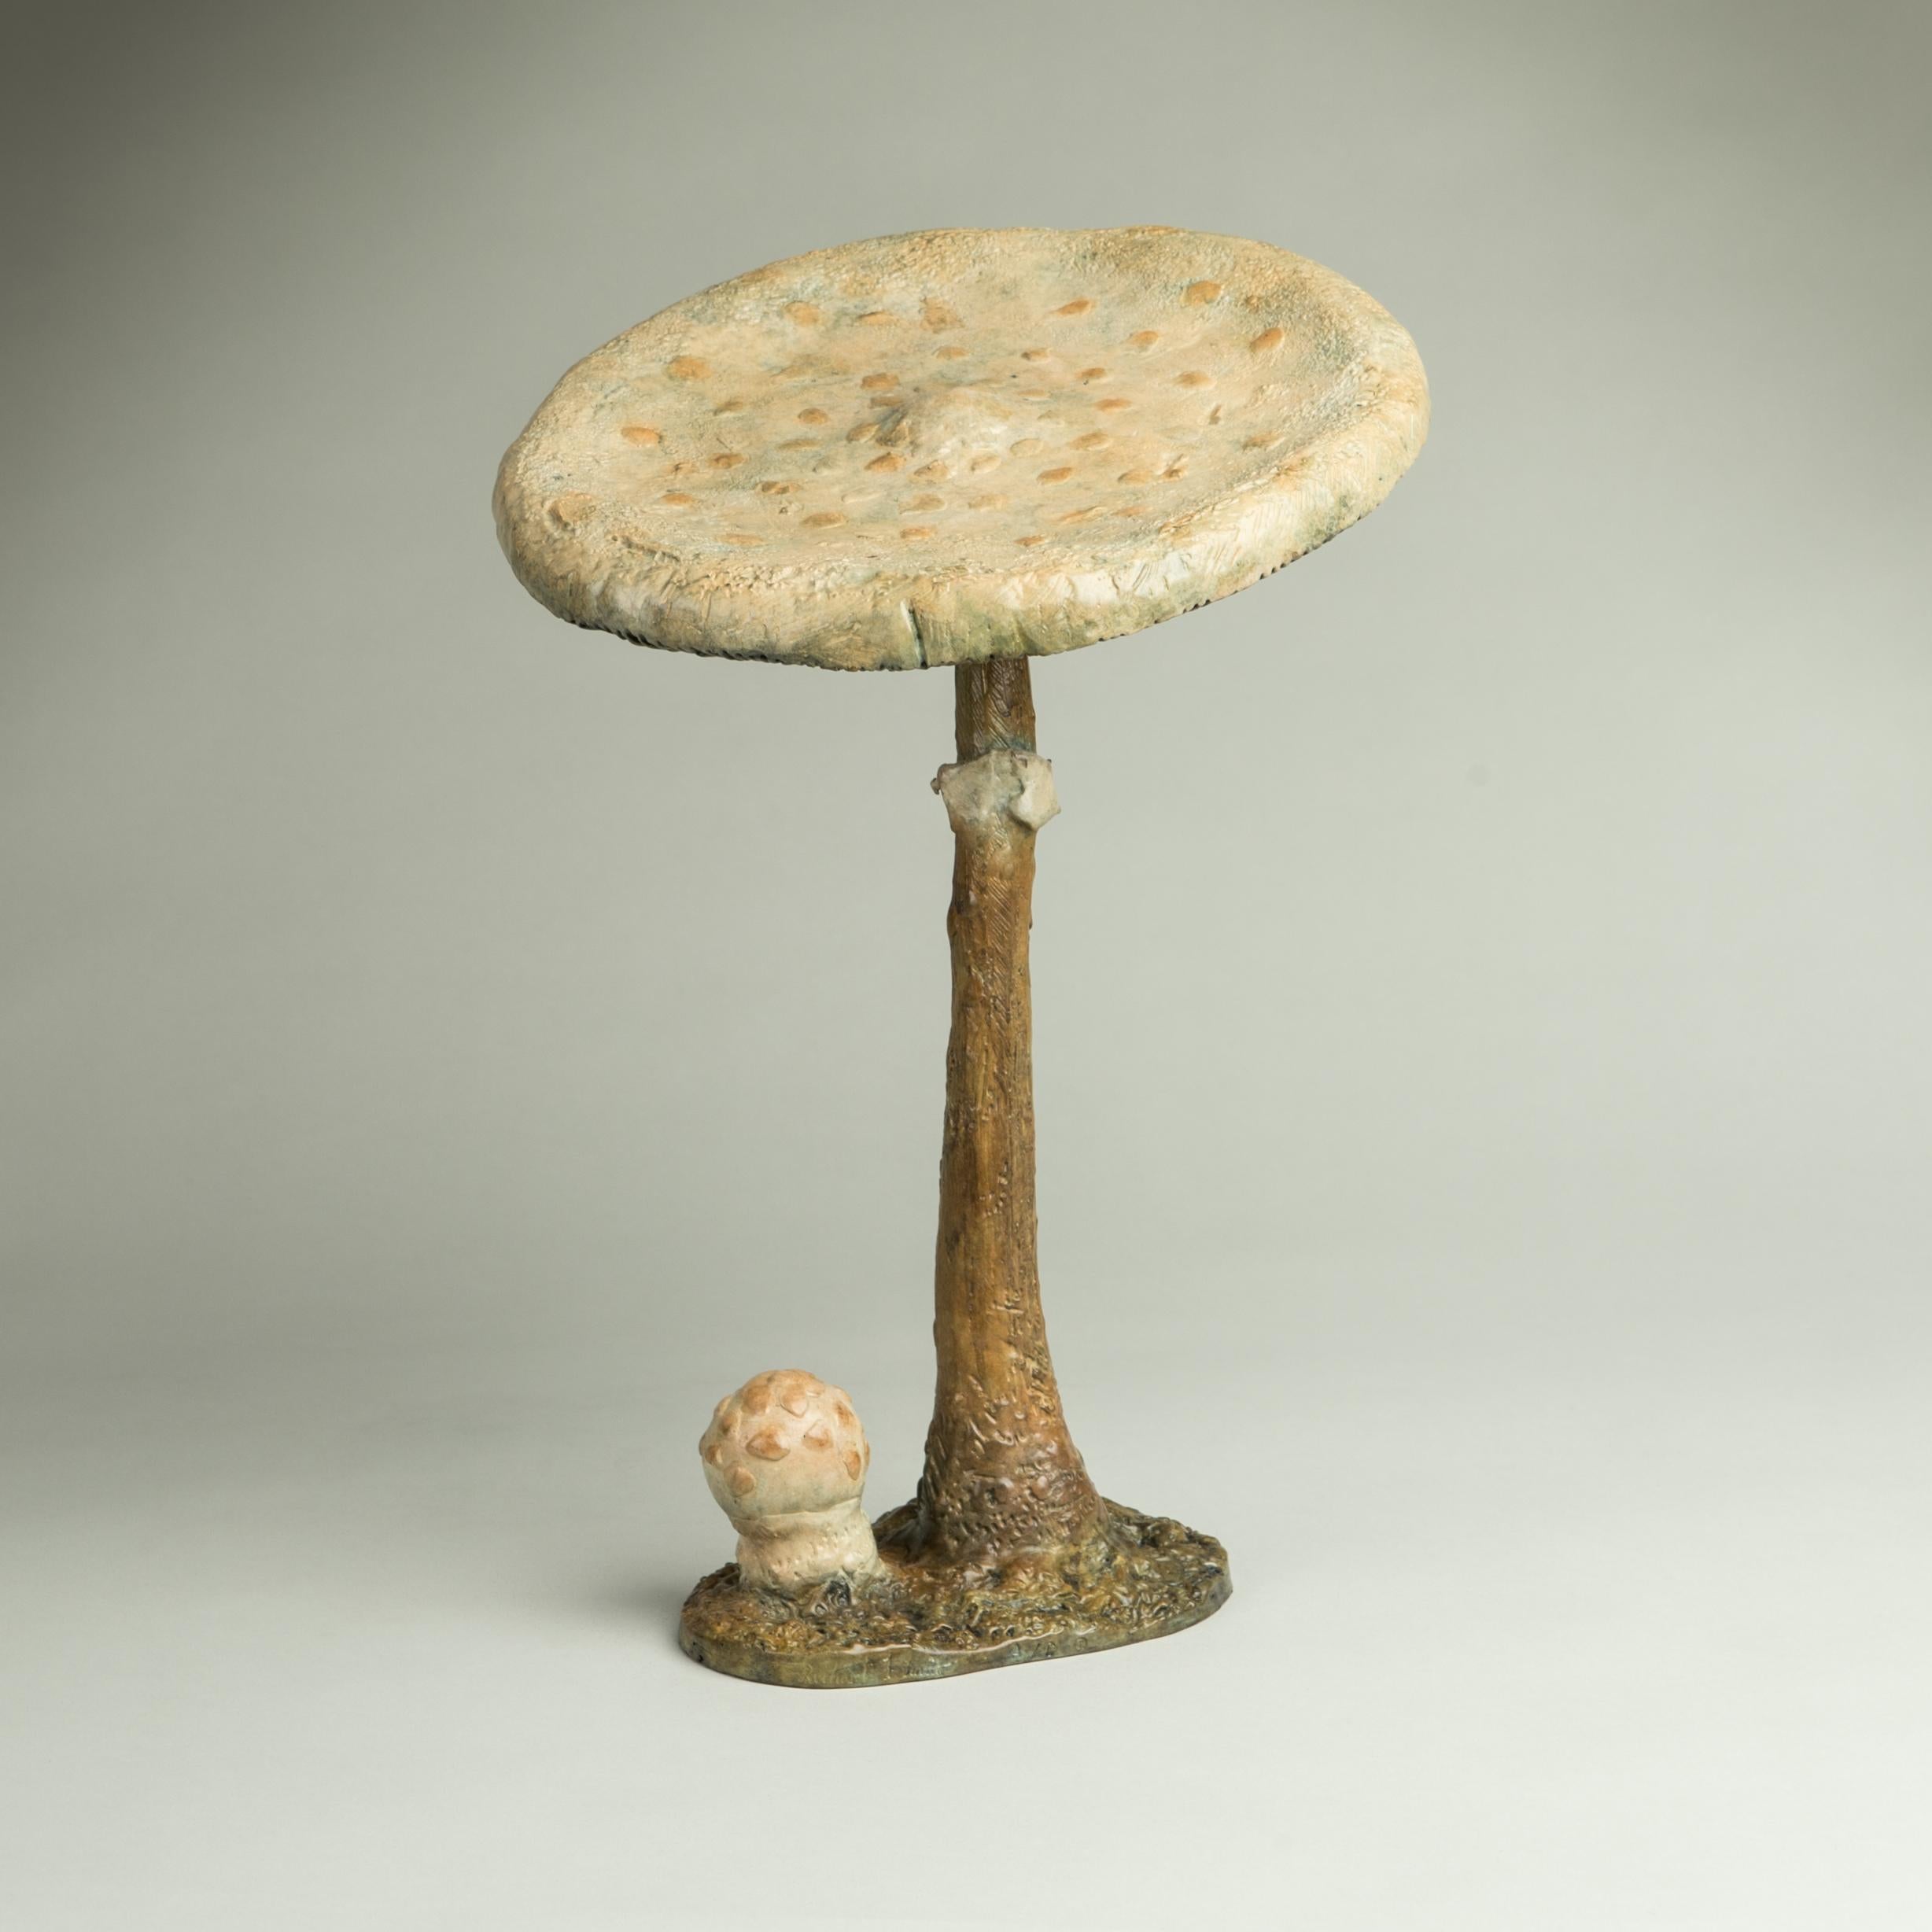 Richard Smith Still-Life Sculpture - 'Parasol Mushroom' Contemporary bronze sculpture of a mushroom, Wildlife